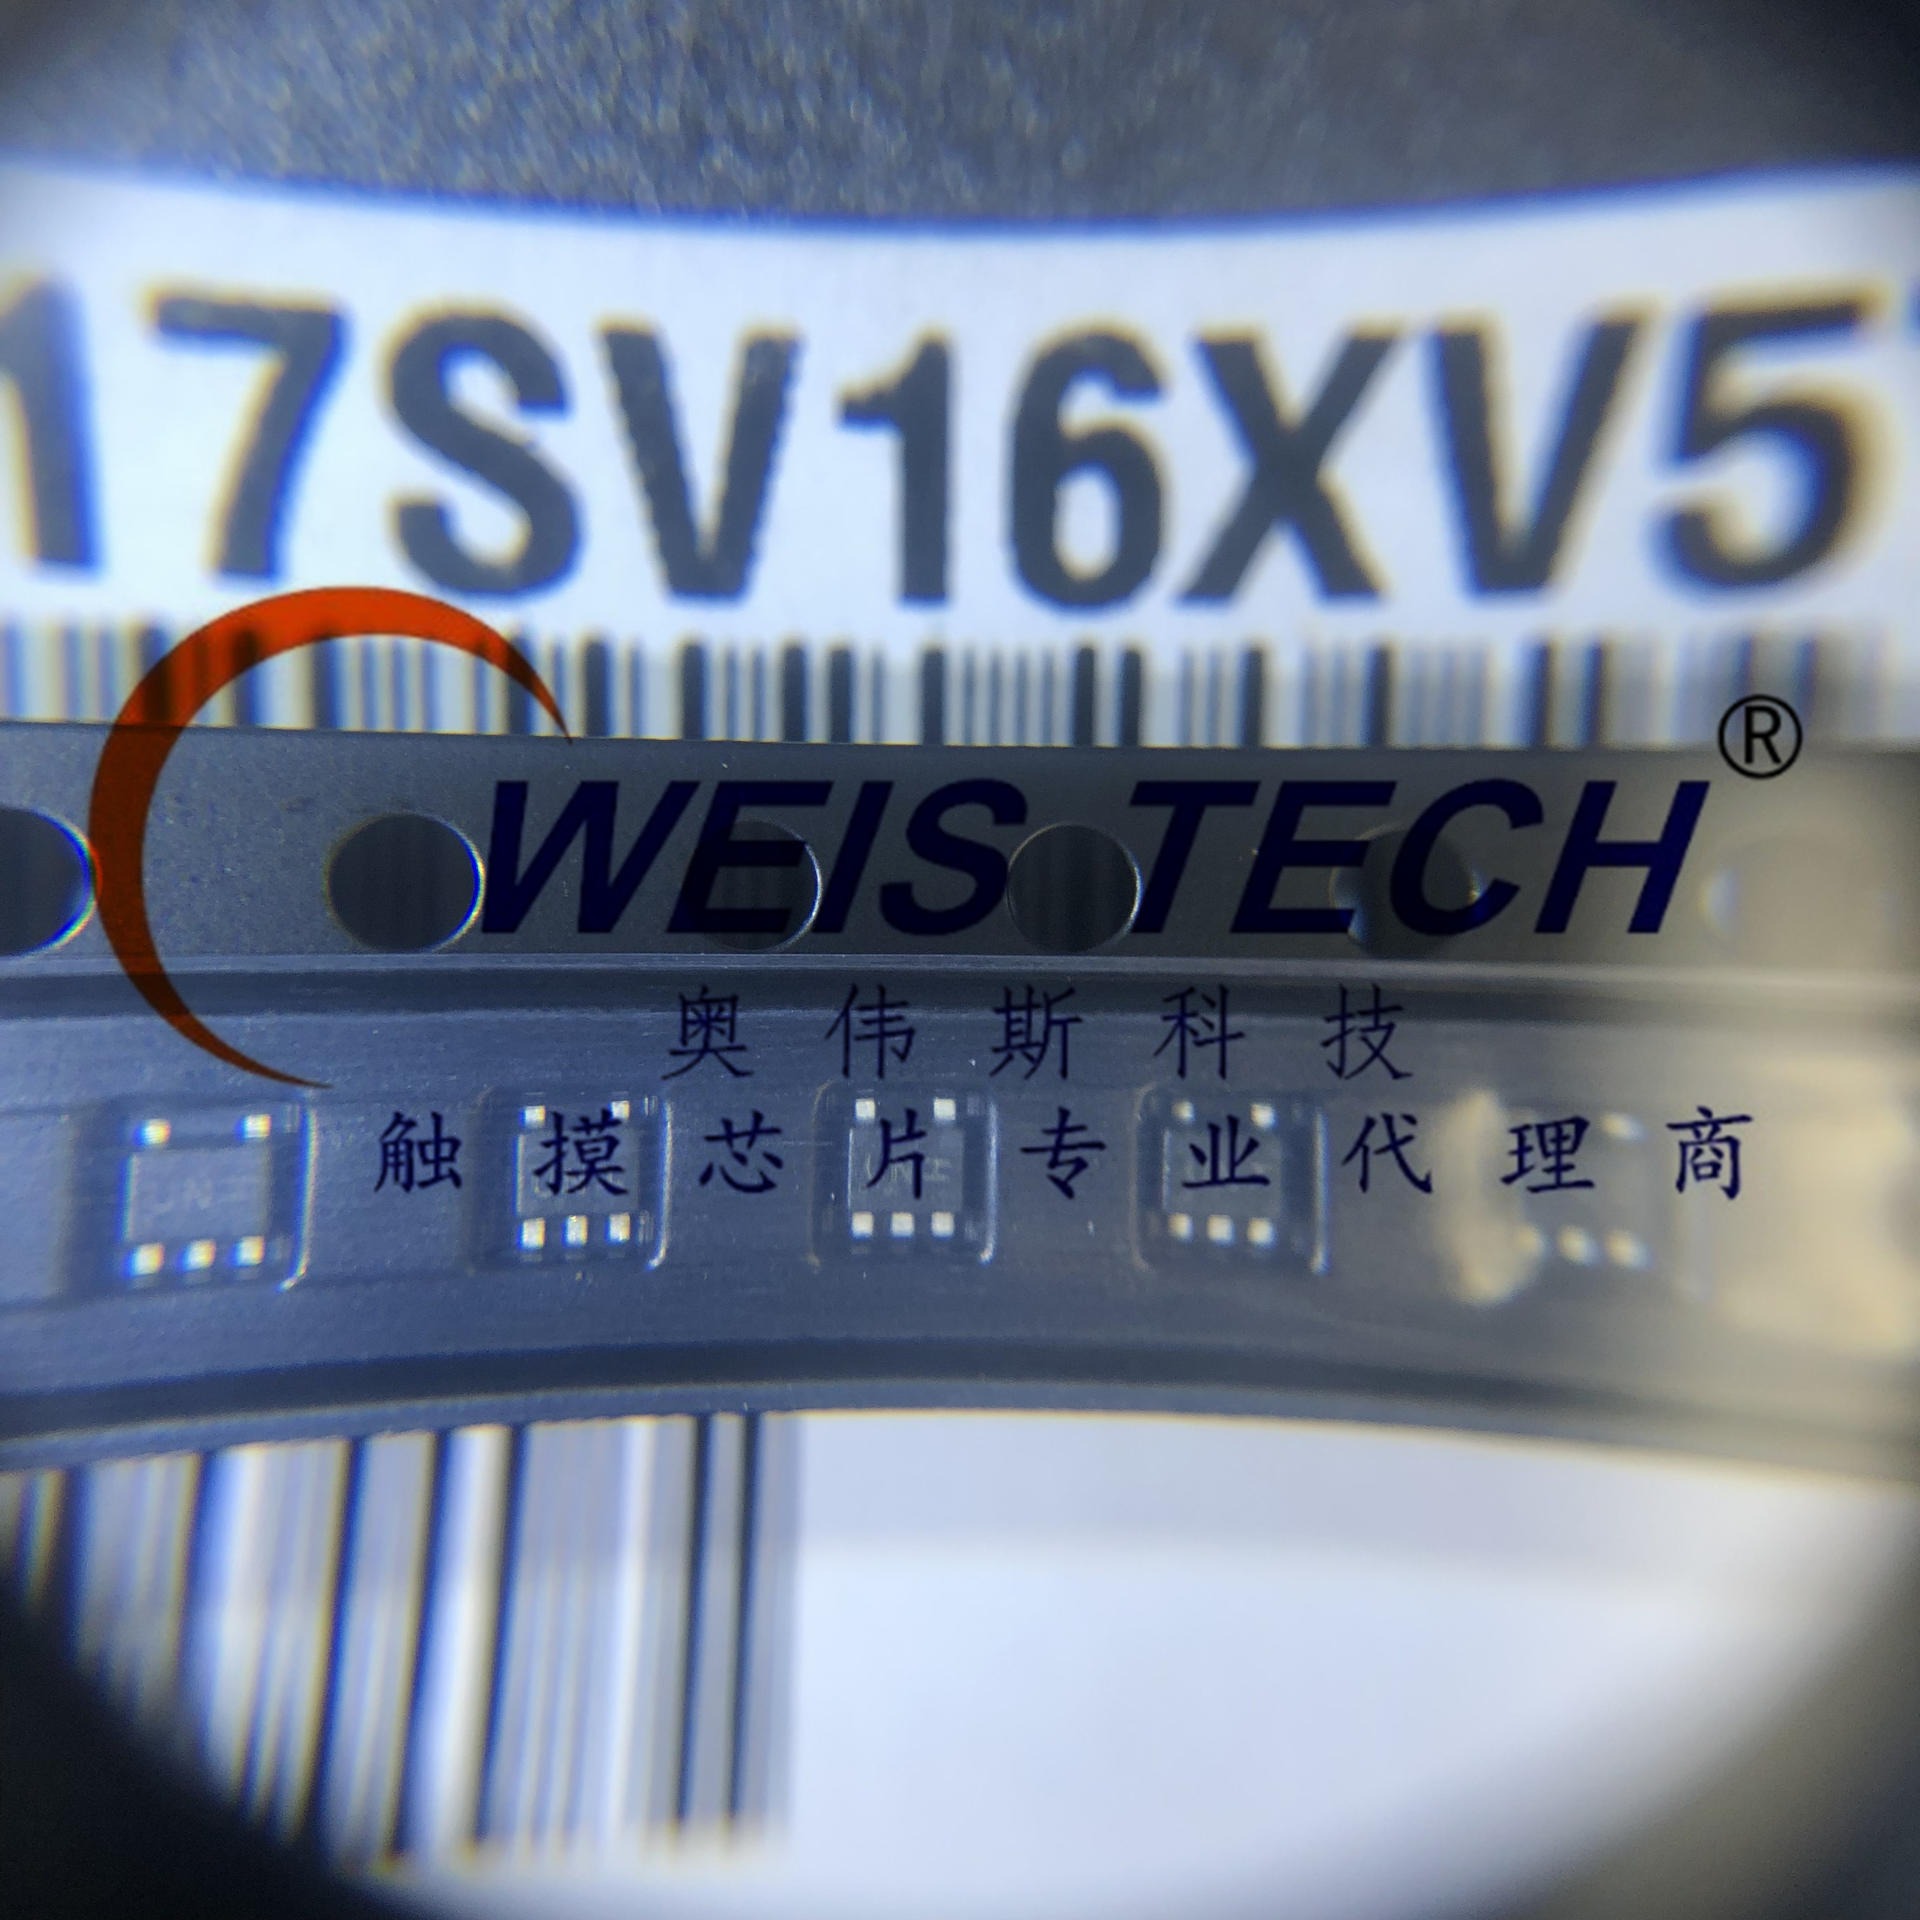 NL17SV16XV5T2G    电源管理芯片  触摸芯片 单片机  放算IC专业代理商芯片  配单 经销与代理